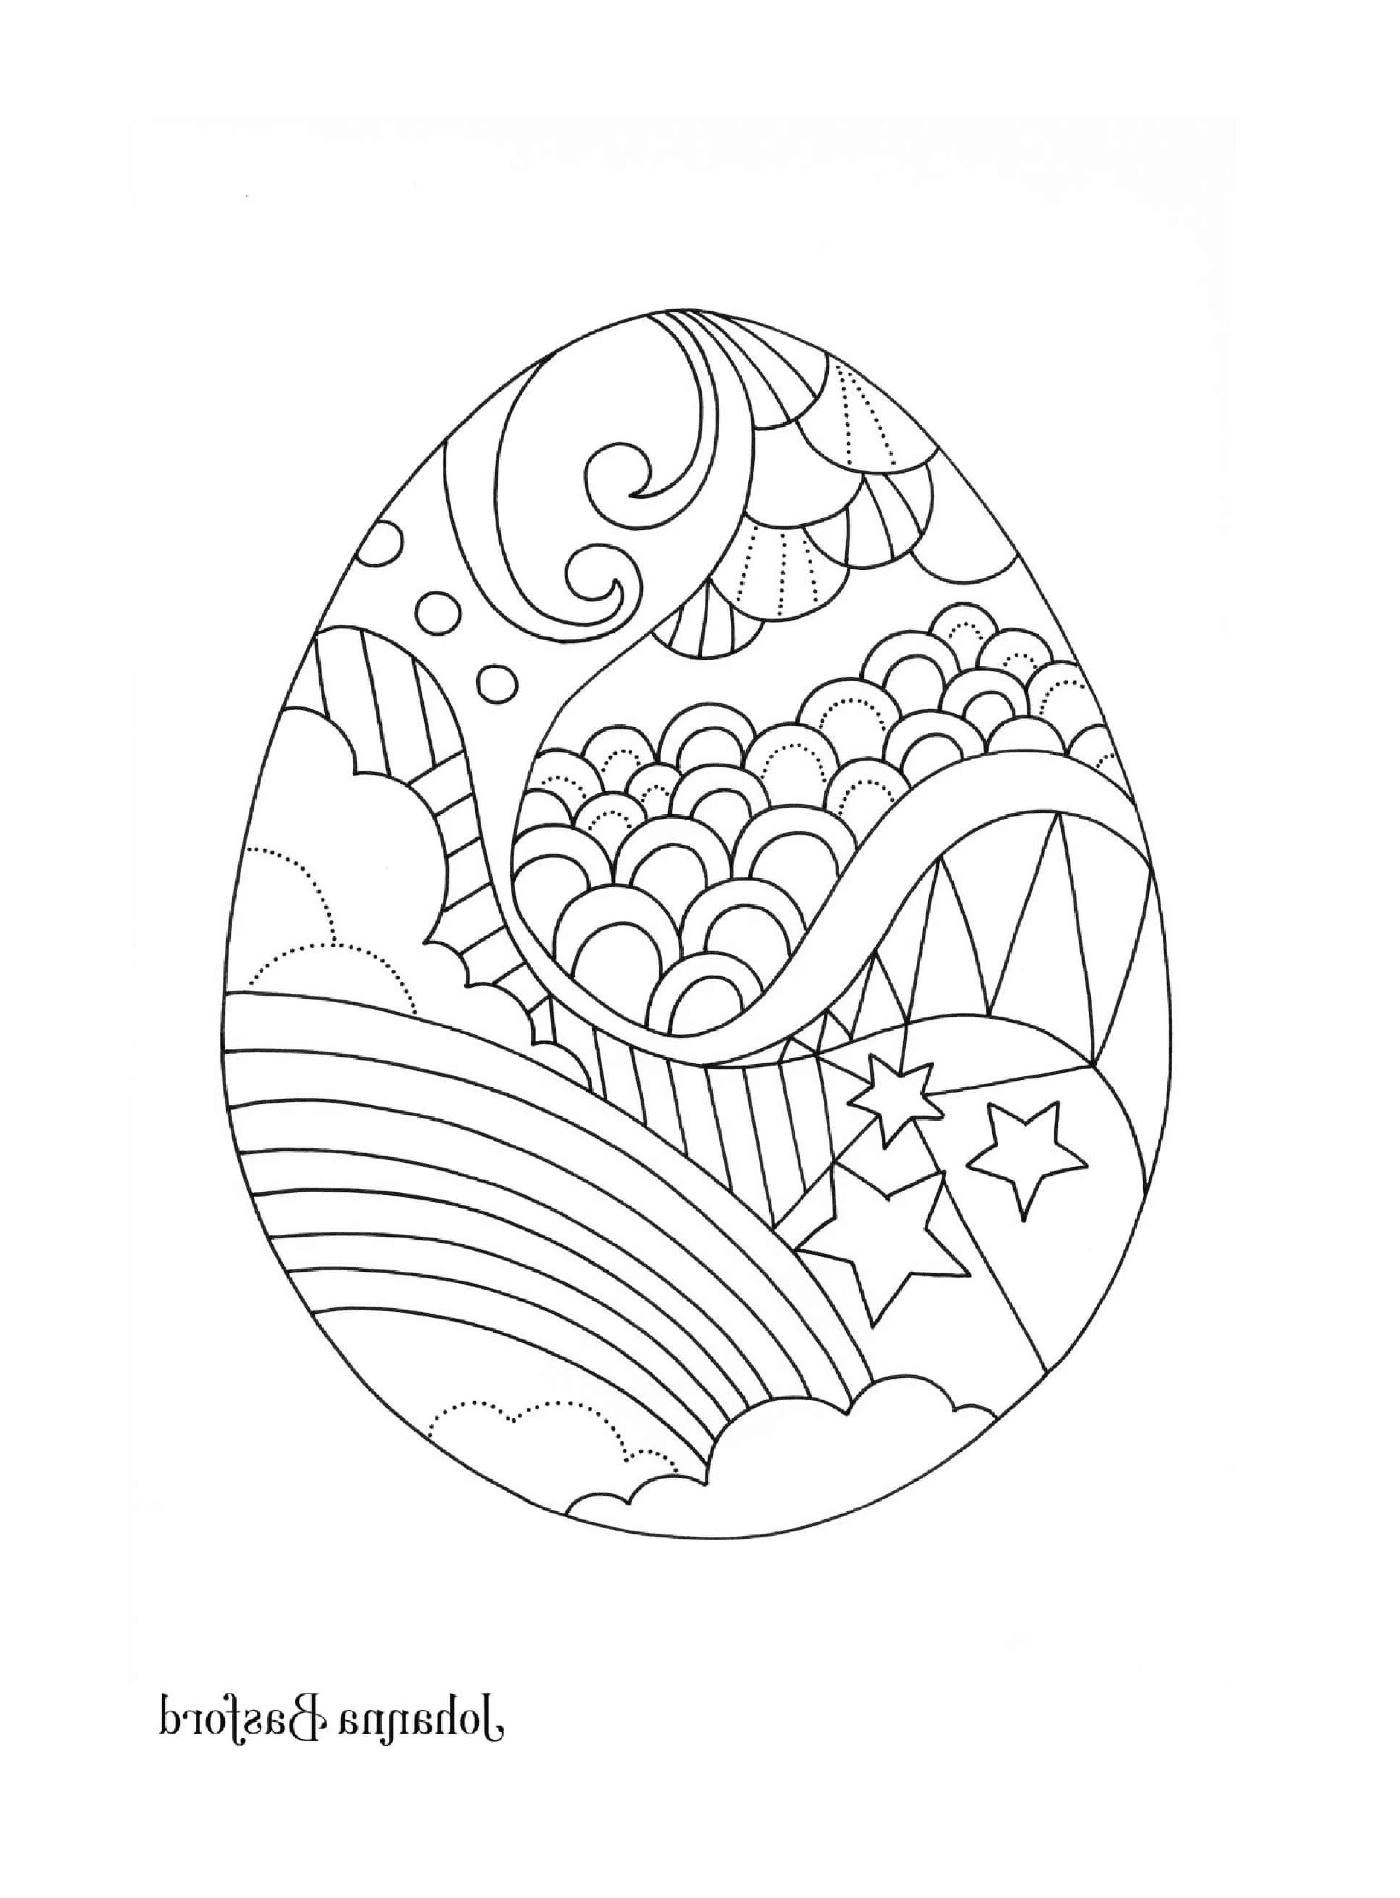  Un huevo de Pascua decorado con un arco iris, nubes, estrellas y otros patrones 